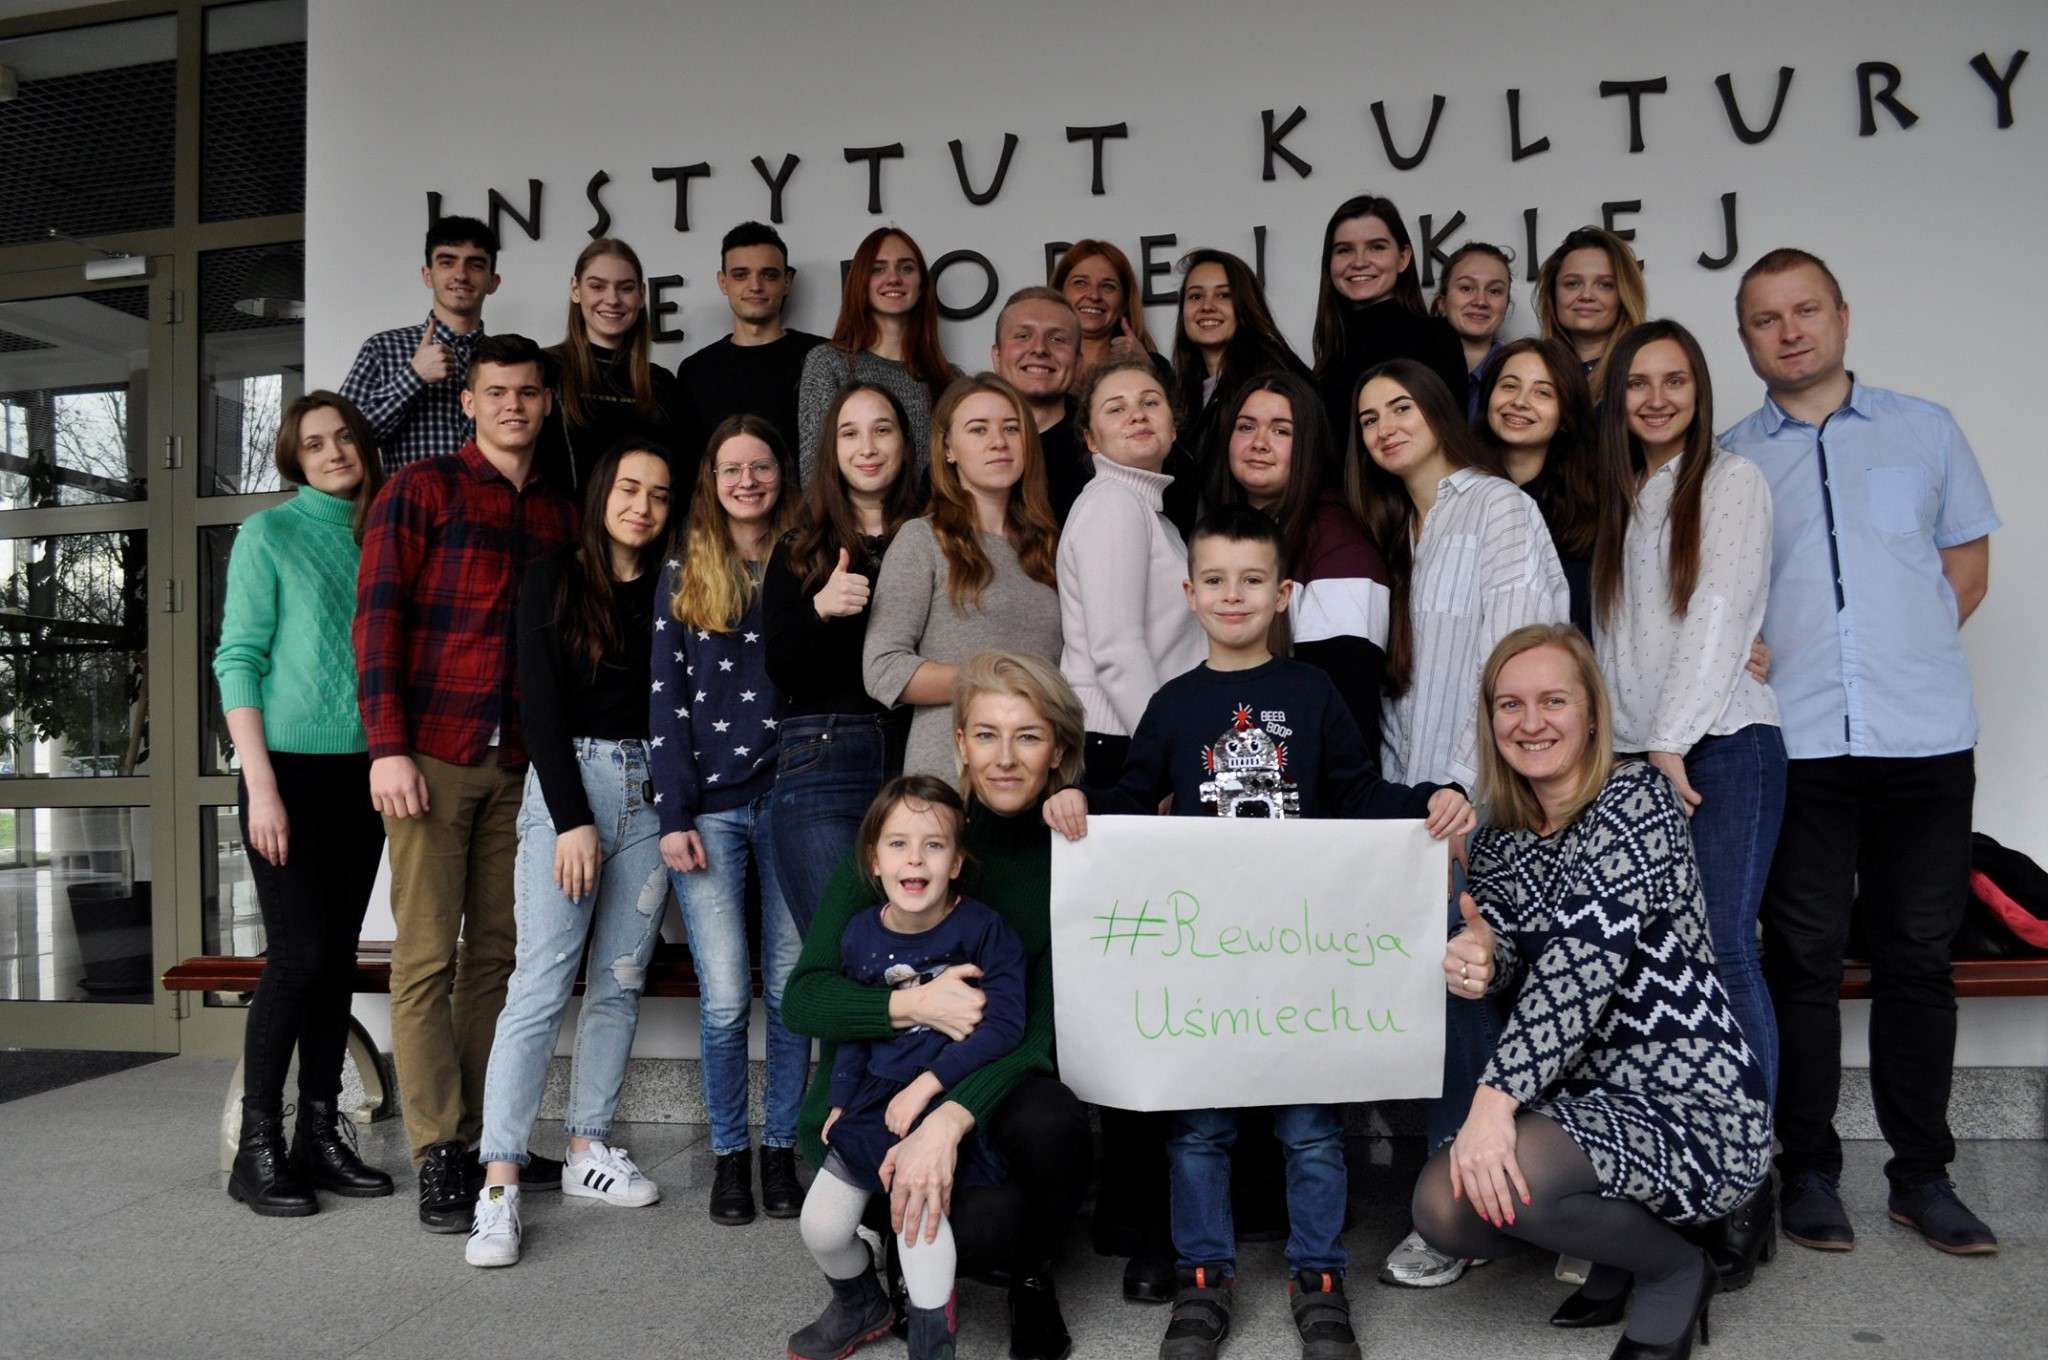 Akcja #RewolucjaUśmiechu – wspieramy Damiana Julkowskiego, studenta komunikacji europejskiej